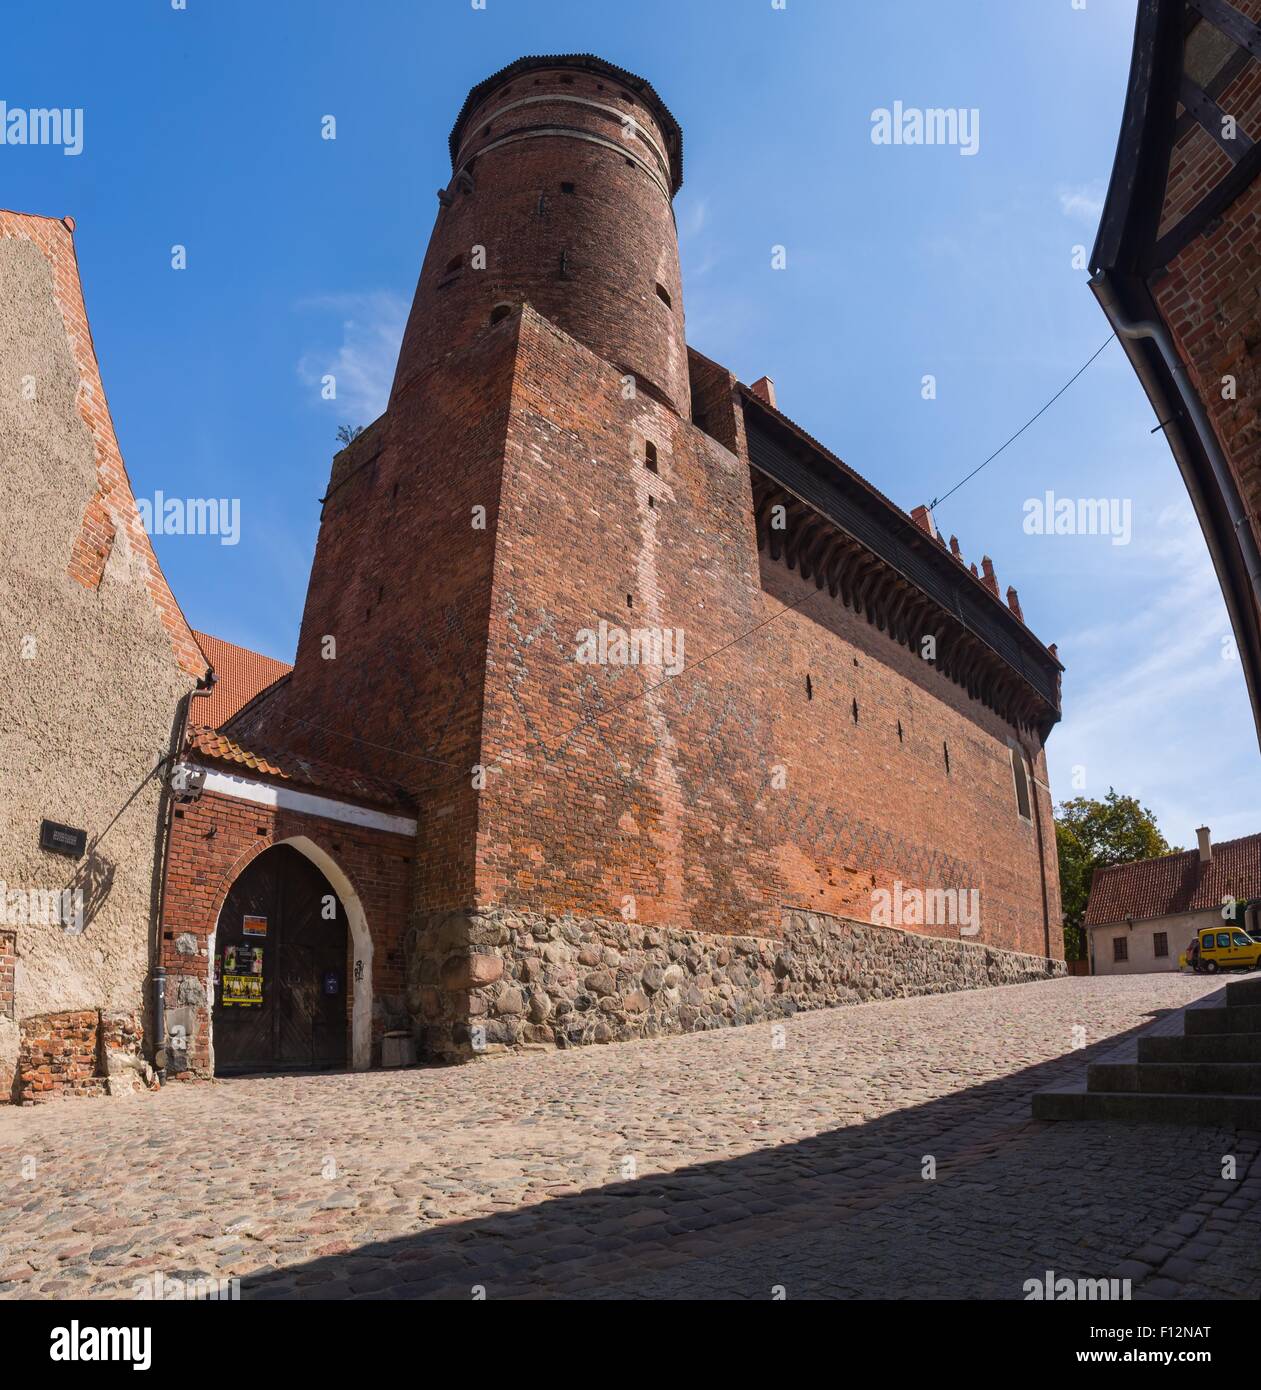 OLSZTYN, Polonia - 21 agosto 2015: il vecchio castello teutonico in Olsztyn (gotico castello Crociati), attrazione turistica di Polan orientale Foto Stock